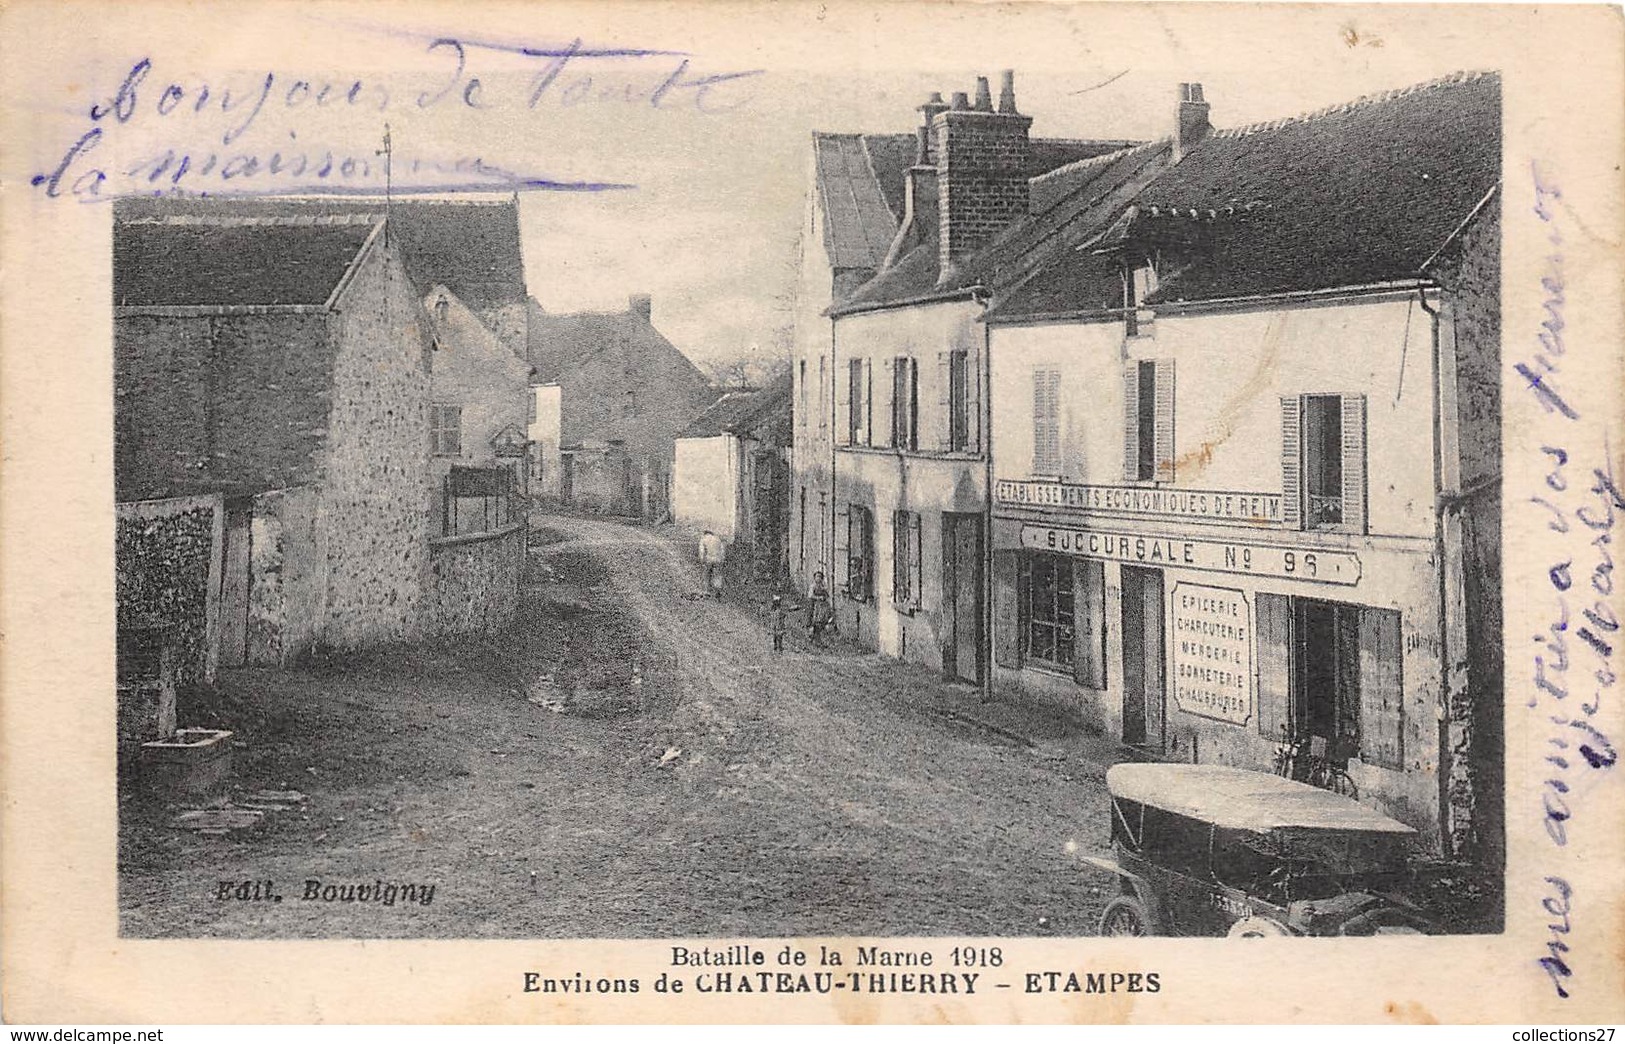 91-ETAMPES- ENVIRONS DE CHATEAU-THIERRY- BATAILLE DE LA MARNE 1918 - Etampes